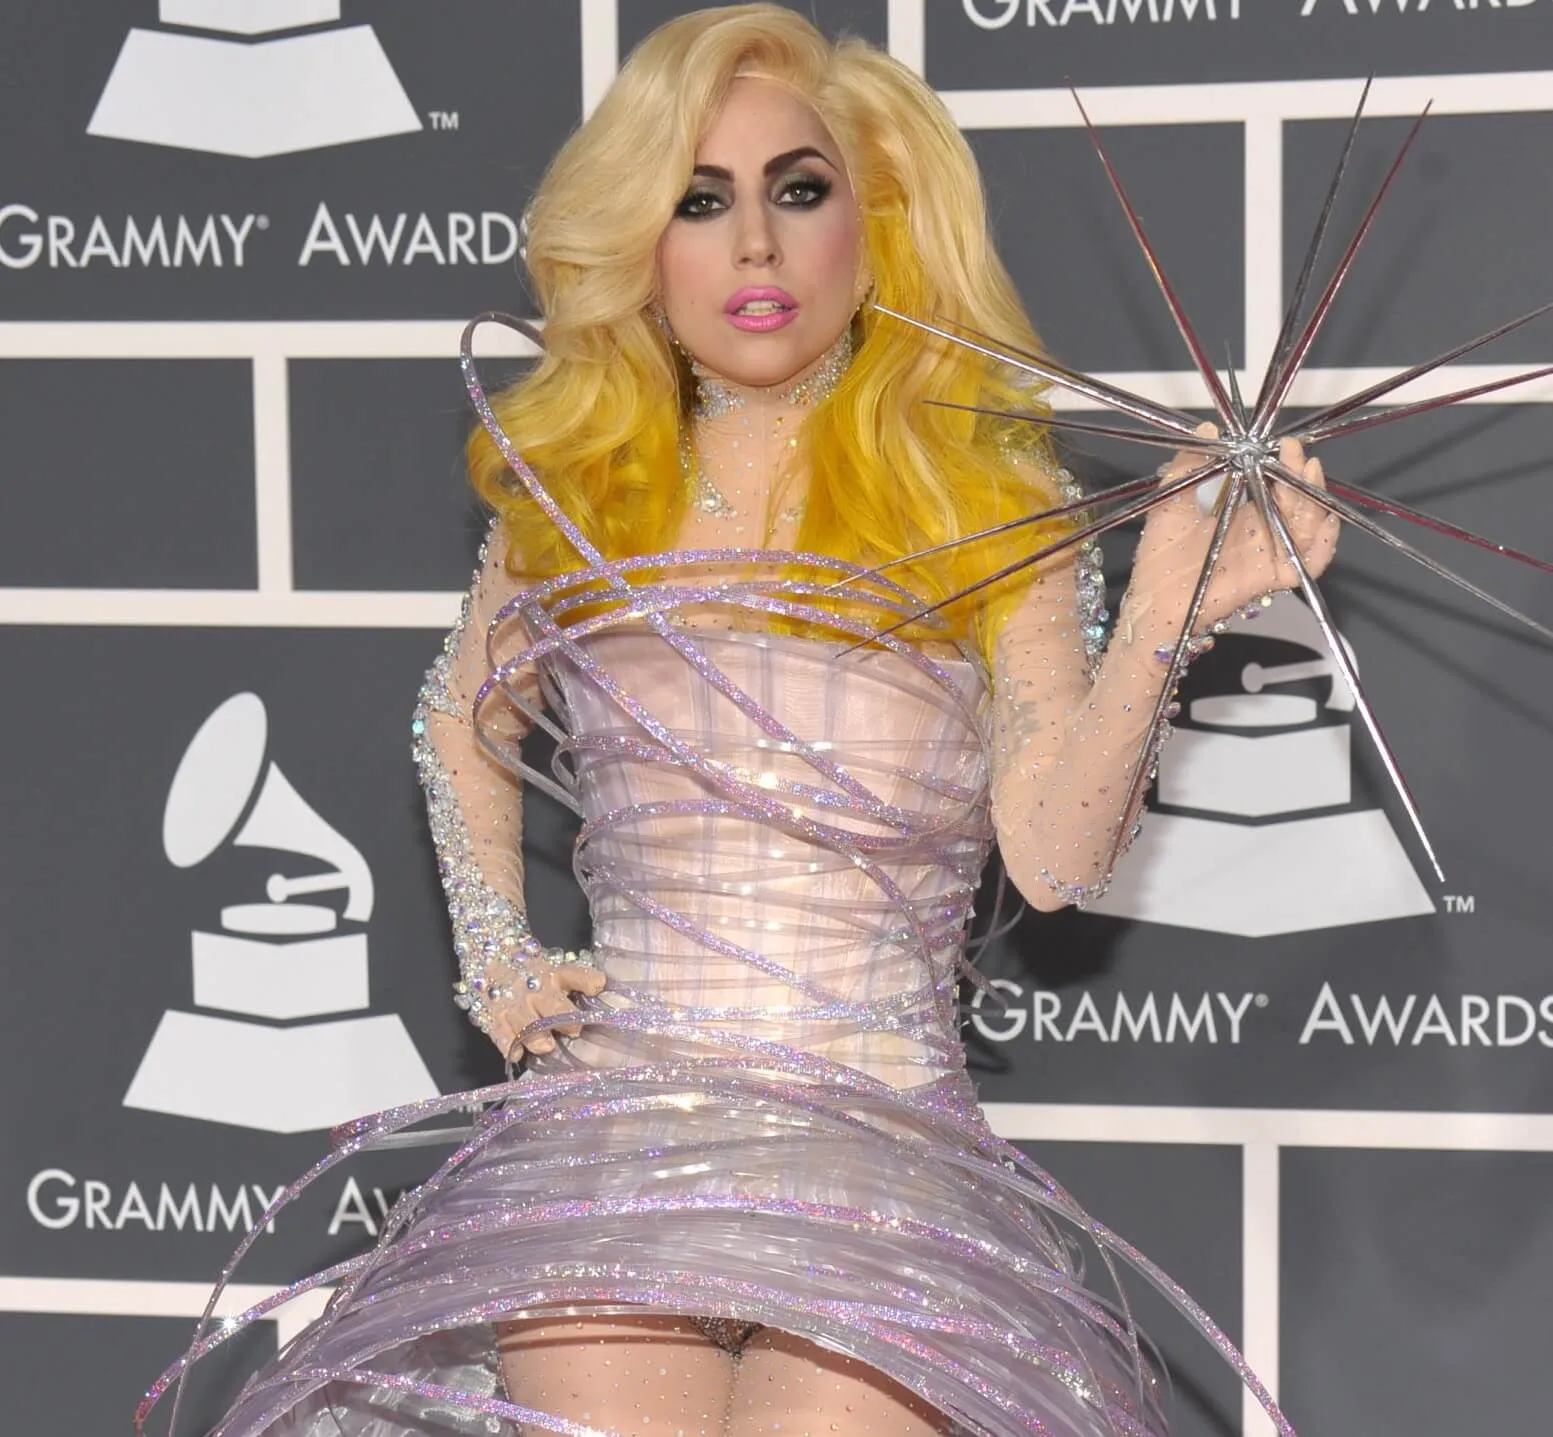 'Artpop' star Lady Gaga in a silver dress